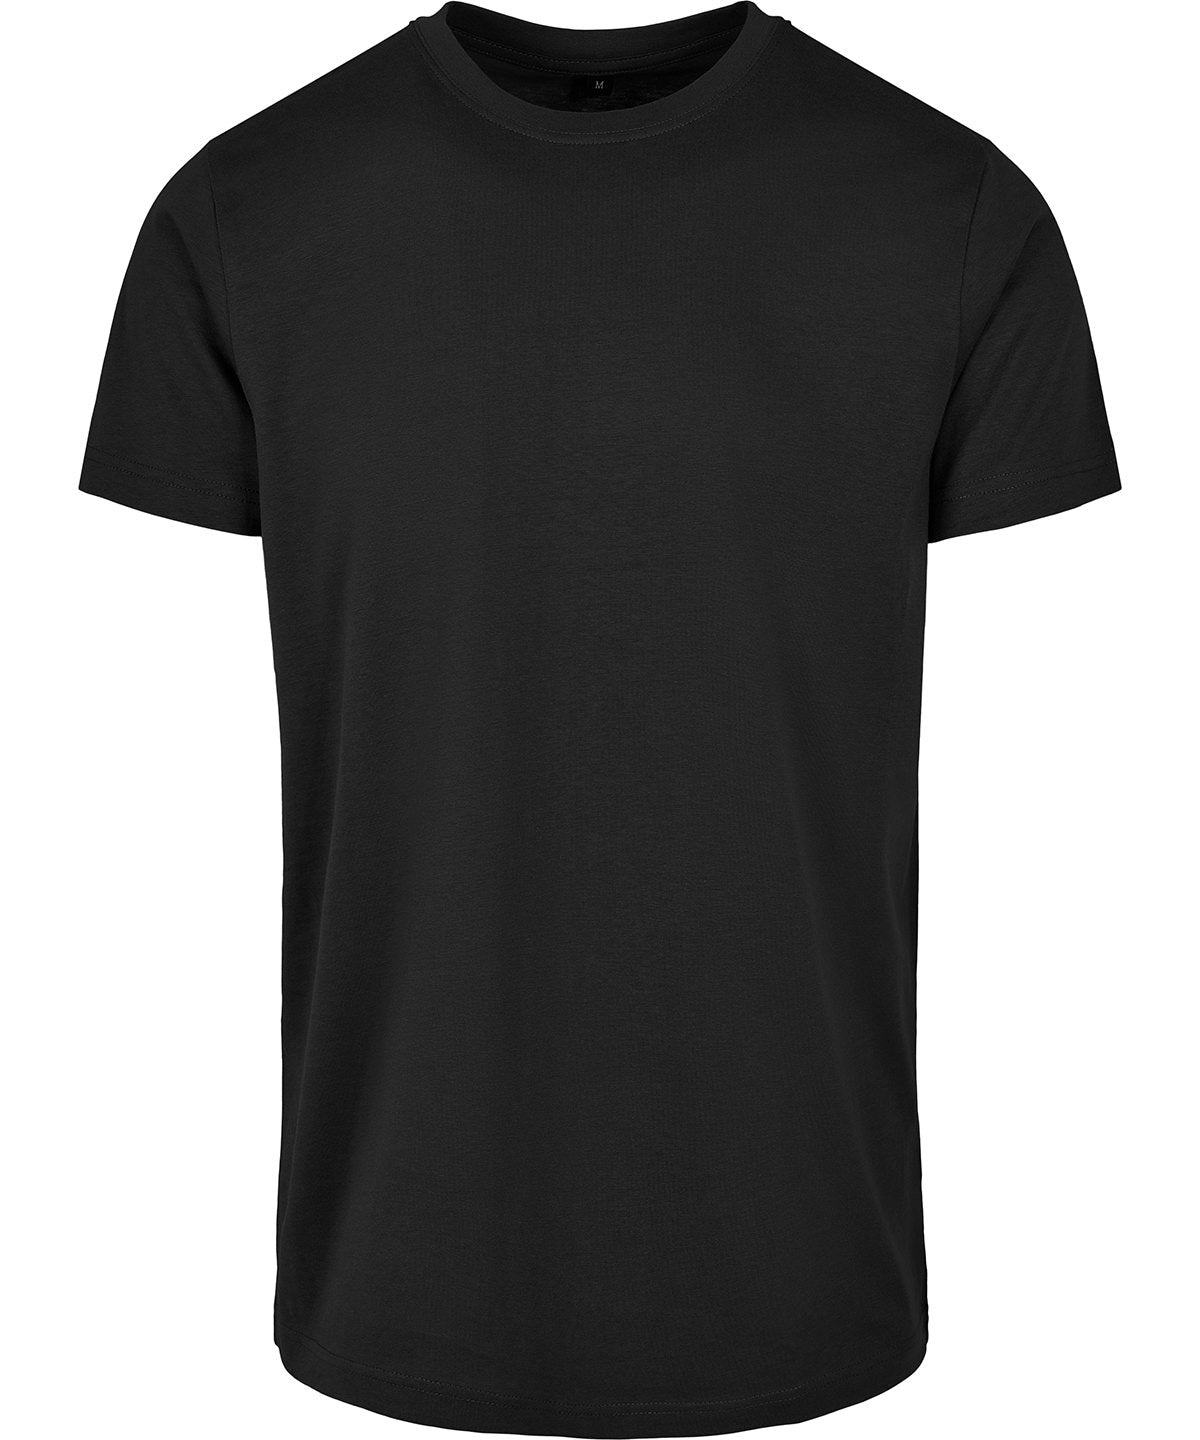 Personalised T-Shirts - Olive Build Your Brand Basic Basic round neck tee